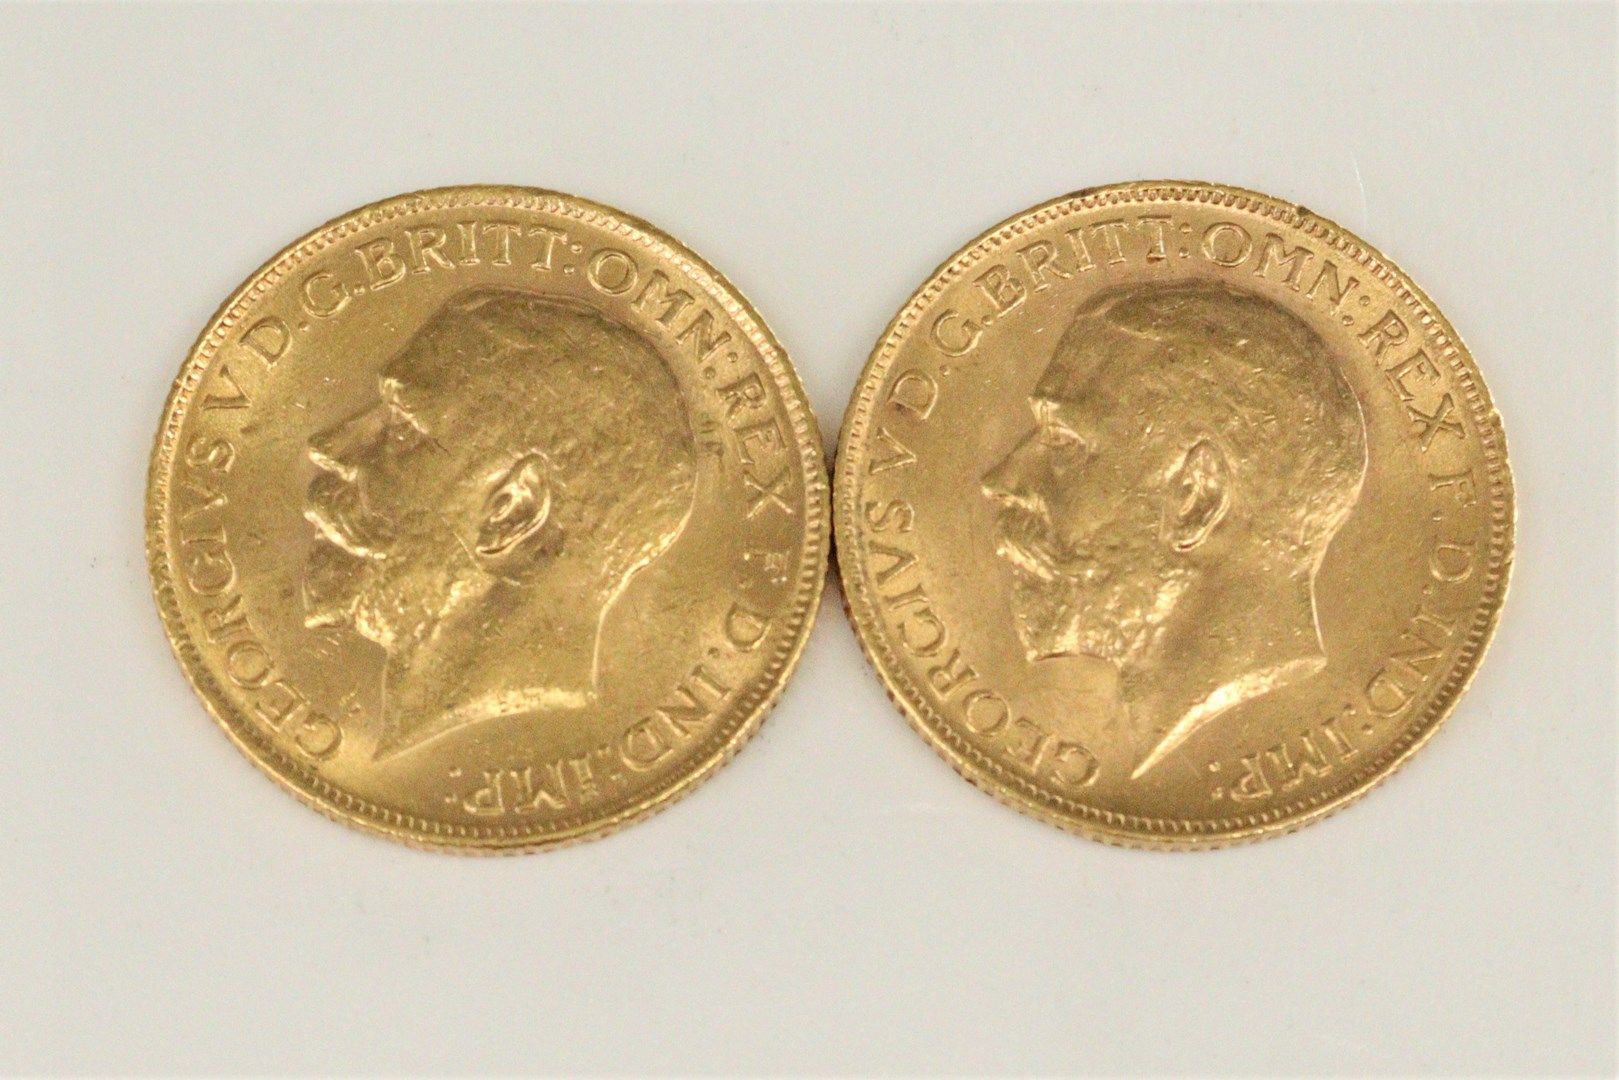 Null 杰罗杰斯五世20法郎金质奖章（1911年和1912年）拍品

TTB to SUP

重量：15.97克